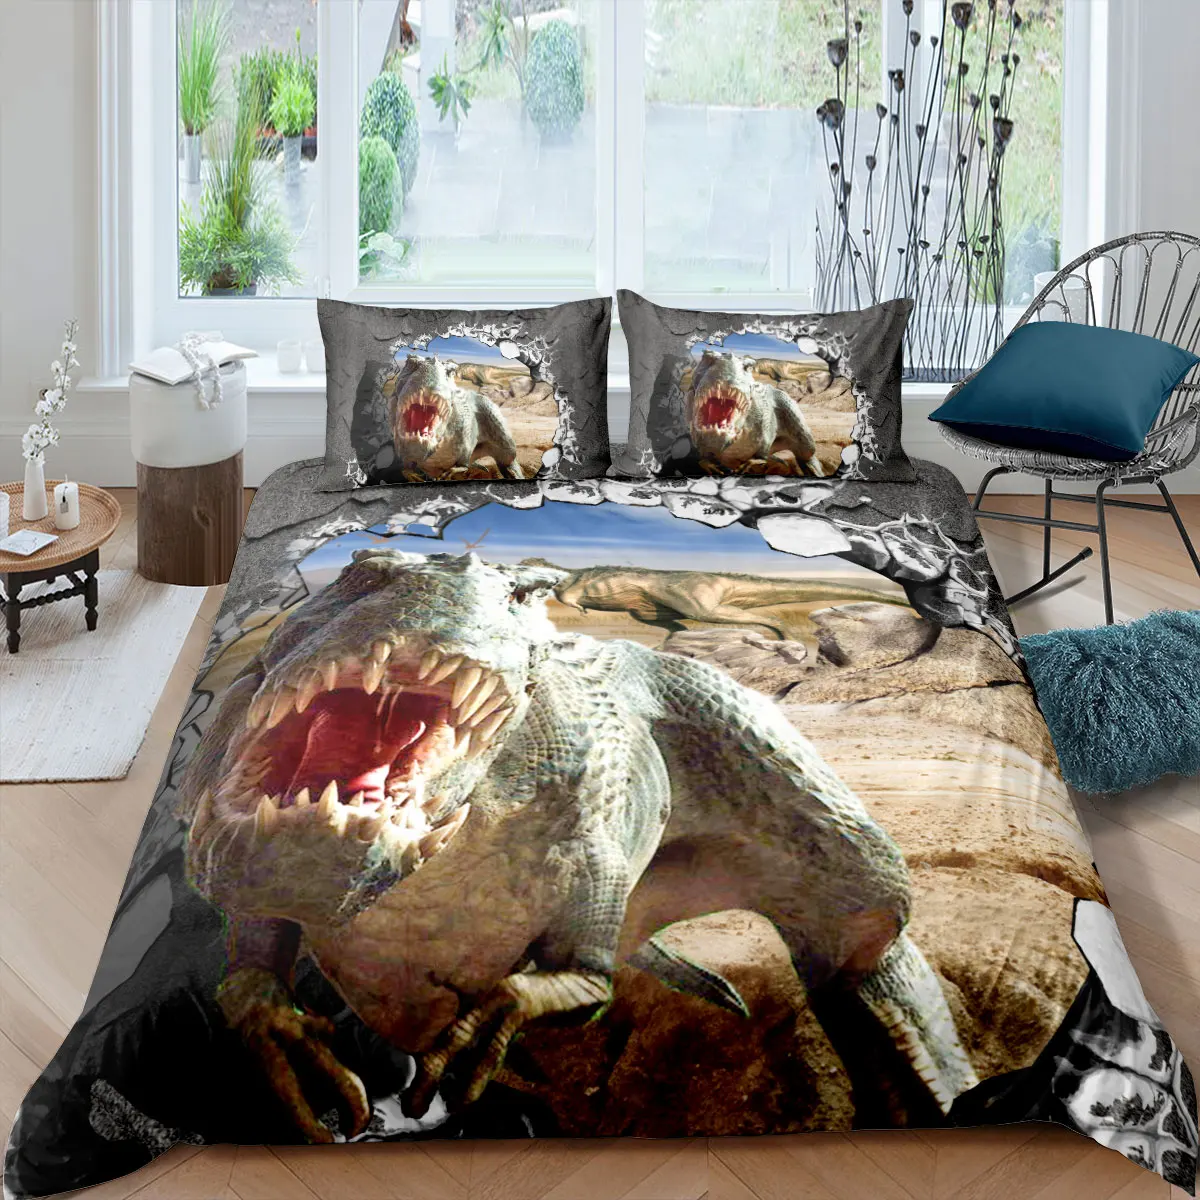 

Комплект постельного белья с динозаврами, персонализированный 3d-комплект постельного белья для подростков, «Парк Юрского периода» 210x21, раз...